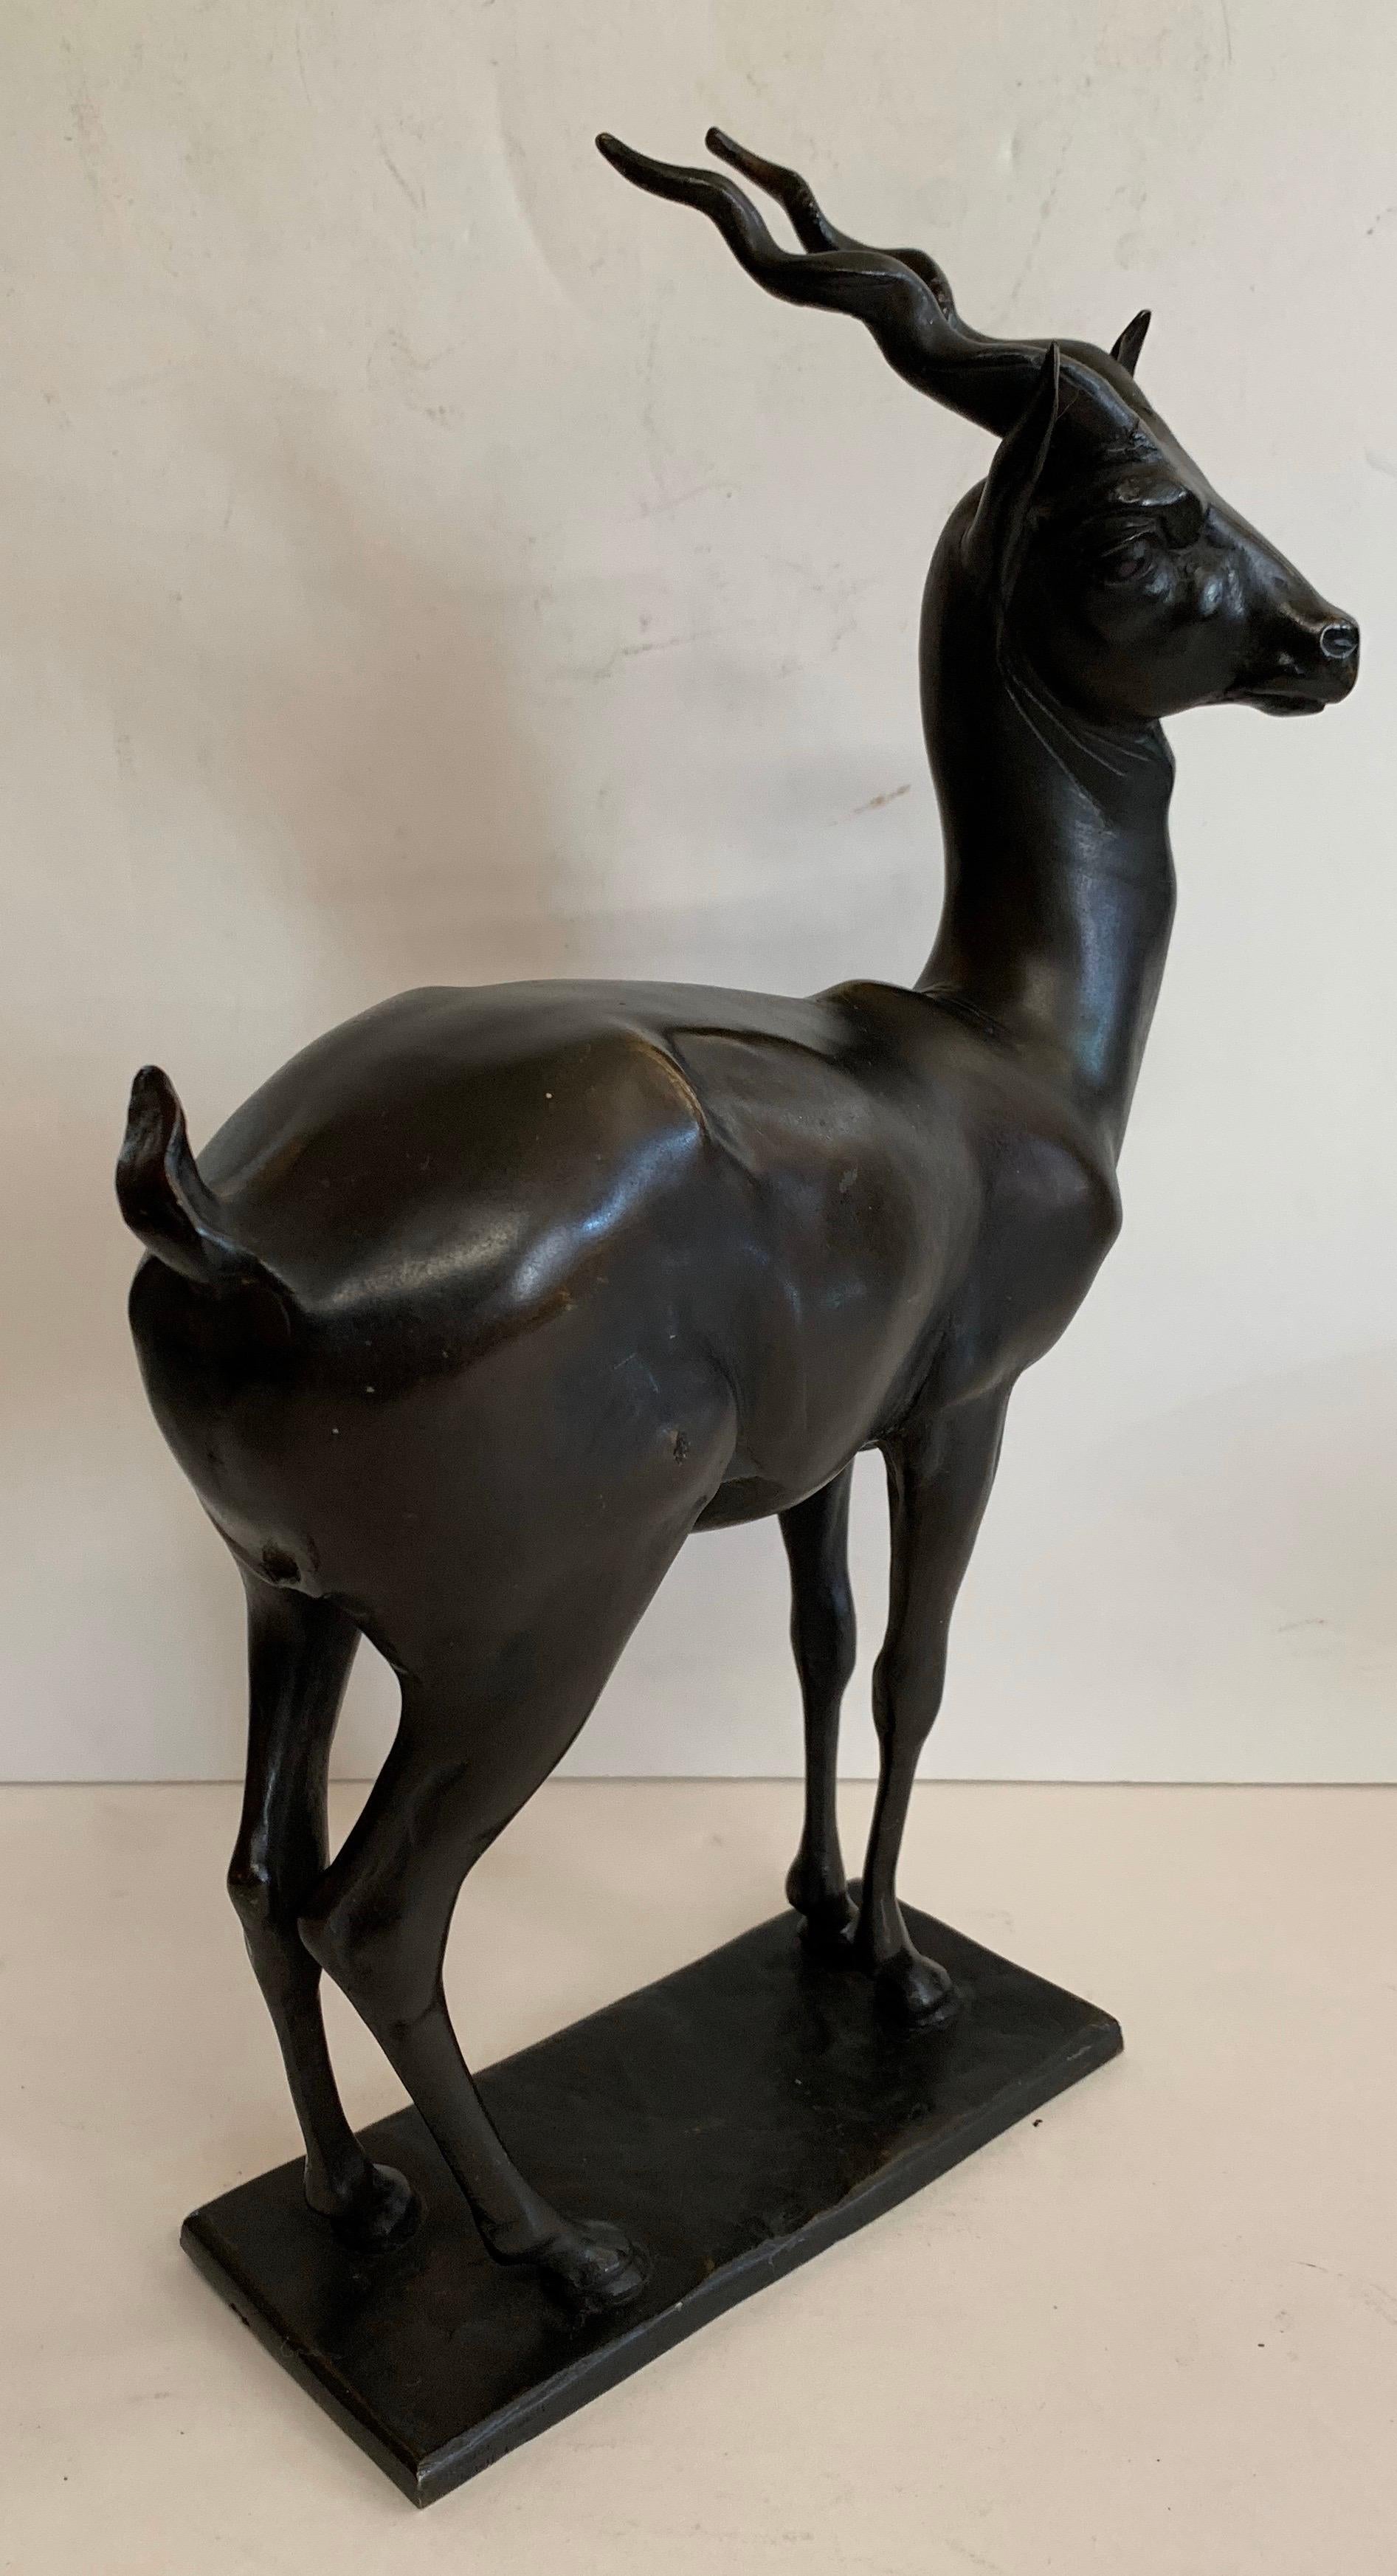 Une merveilleuse sculpture d'antilope en bronze patiné, debout, signée Gorham founders OGLM sur une base rectangulaire.